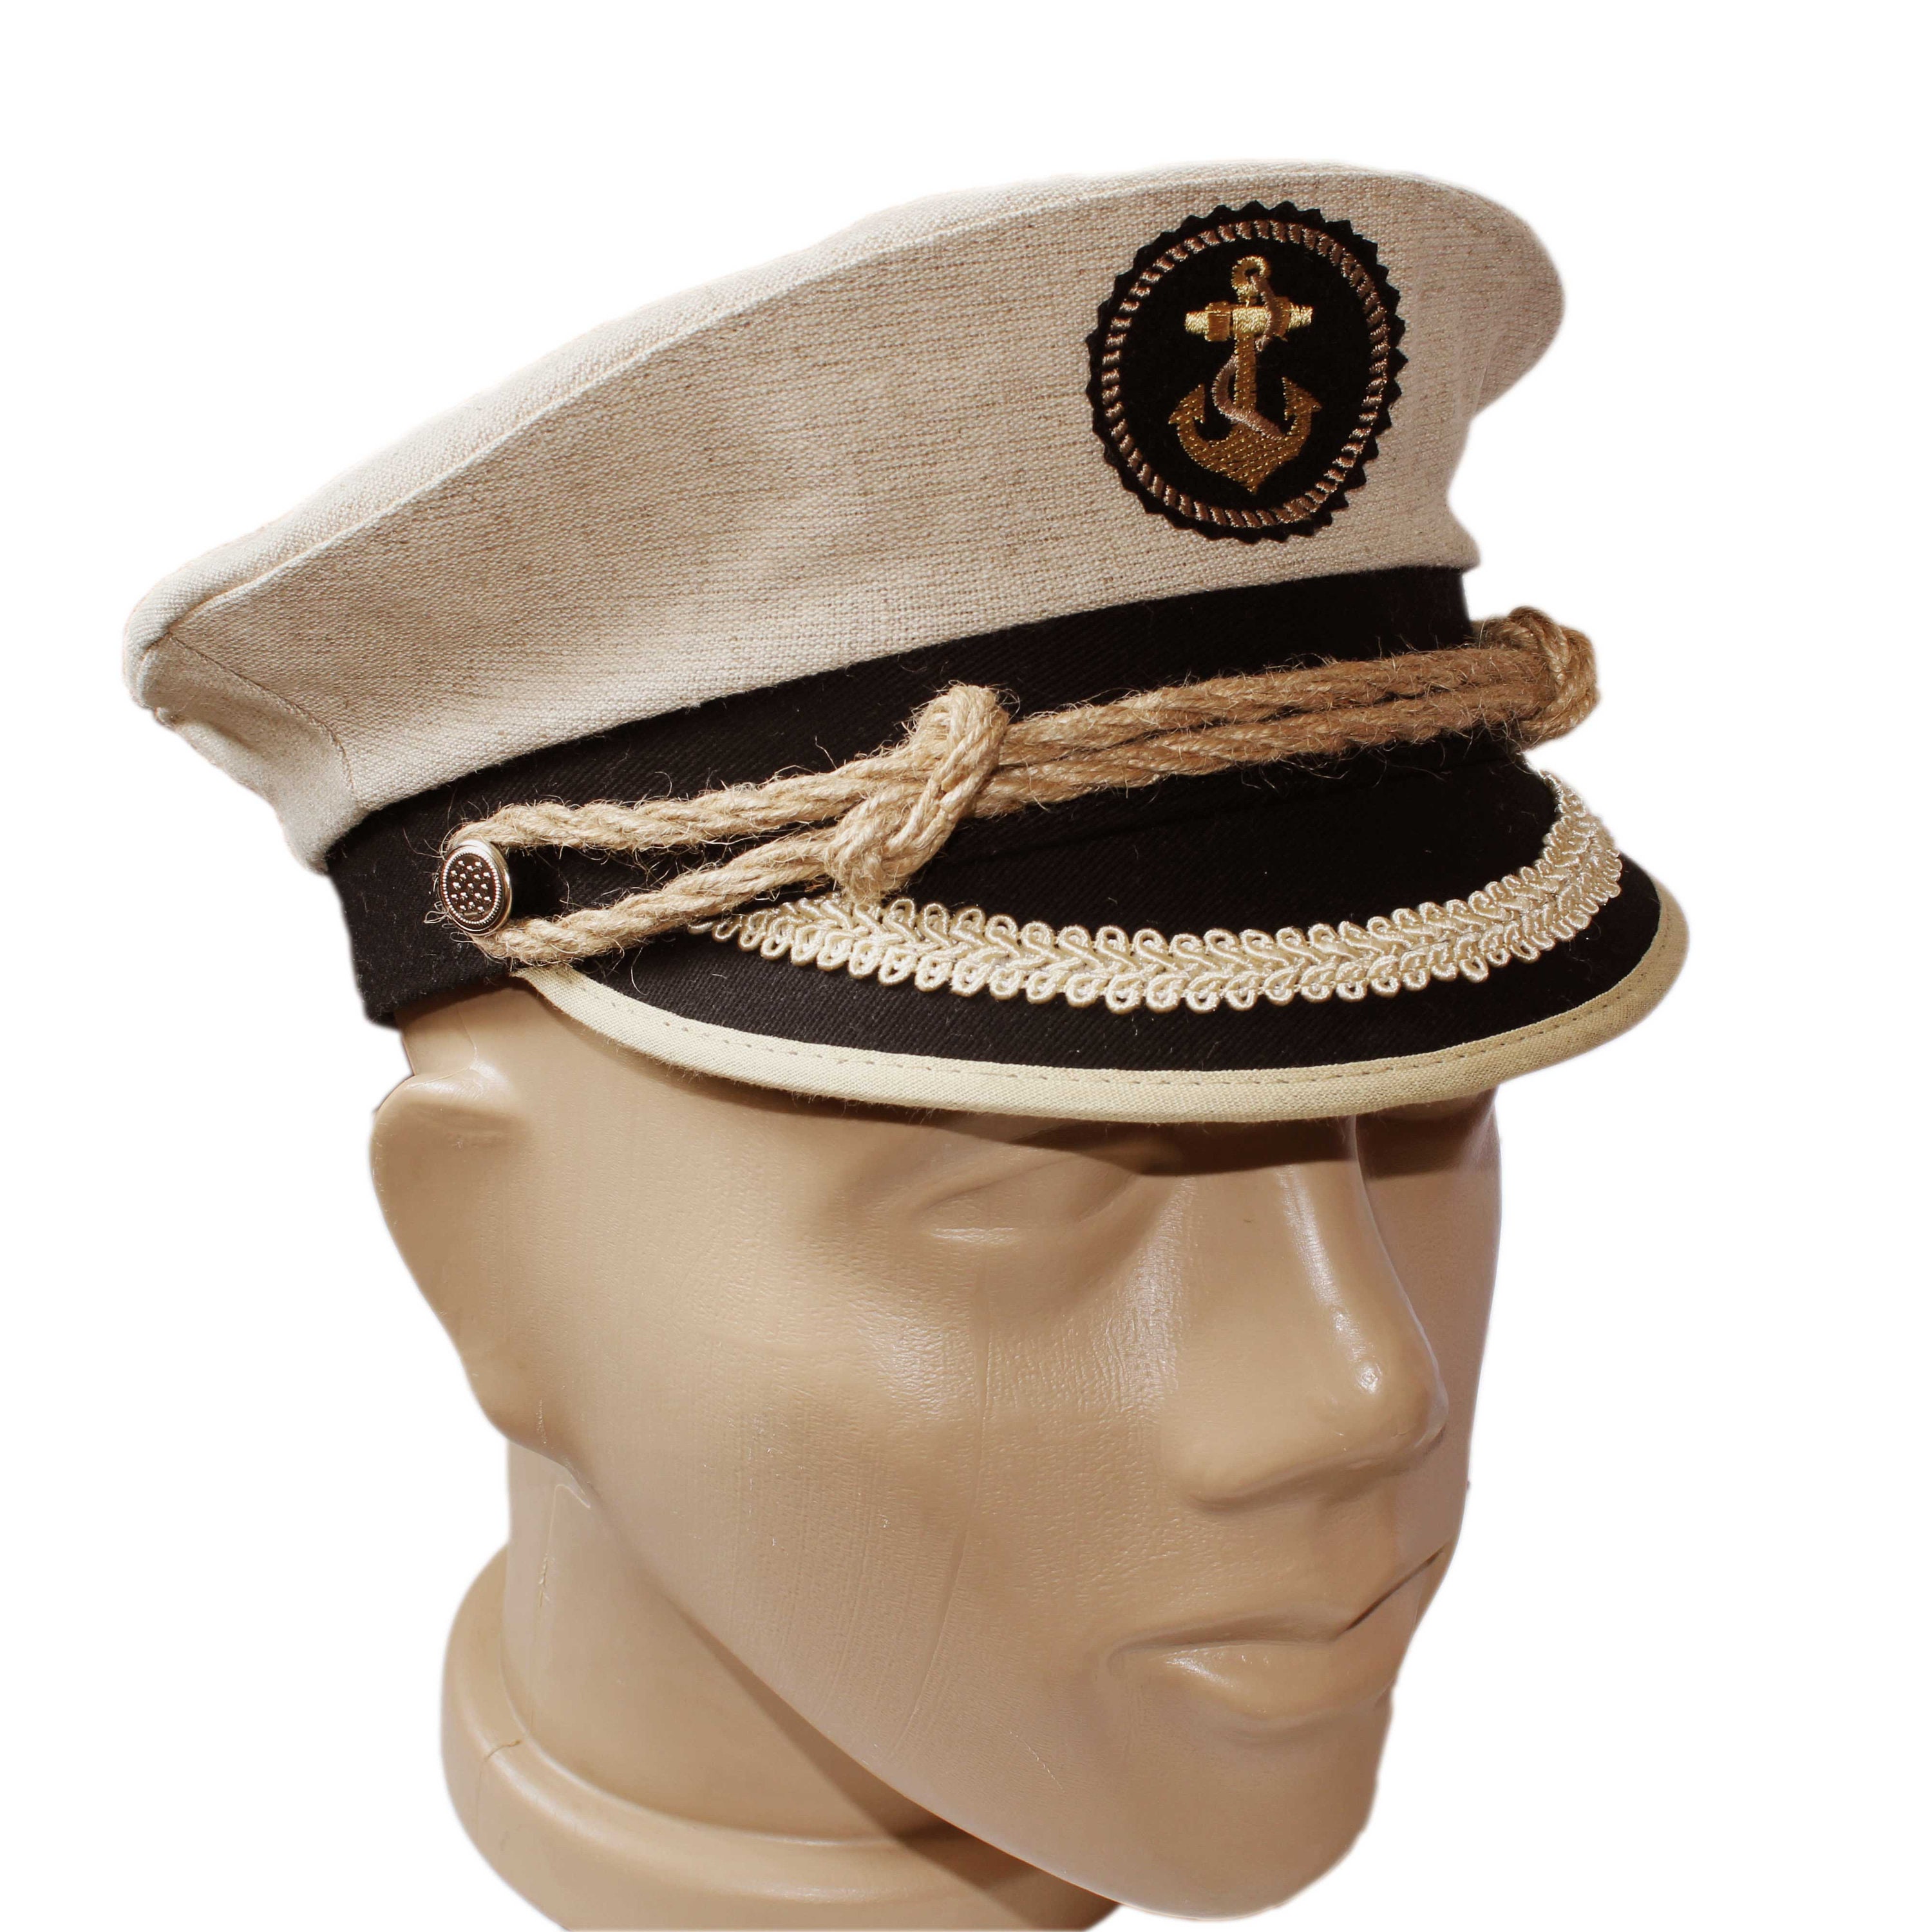  NOLITOY Sombrero de marinero, gorra de capitán, sombrero de  capitán de barco, sombrero de capitán, yate, disfraz de marinero, sombrero  de marinero, sombrero de almirante marino marino, gorra de mar ajustable